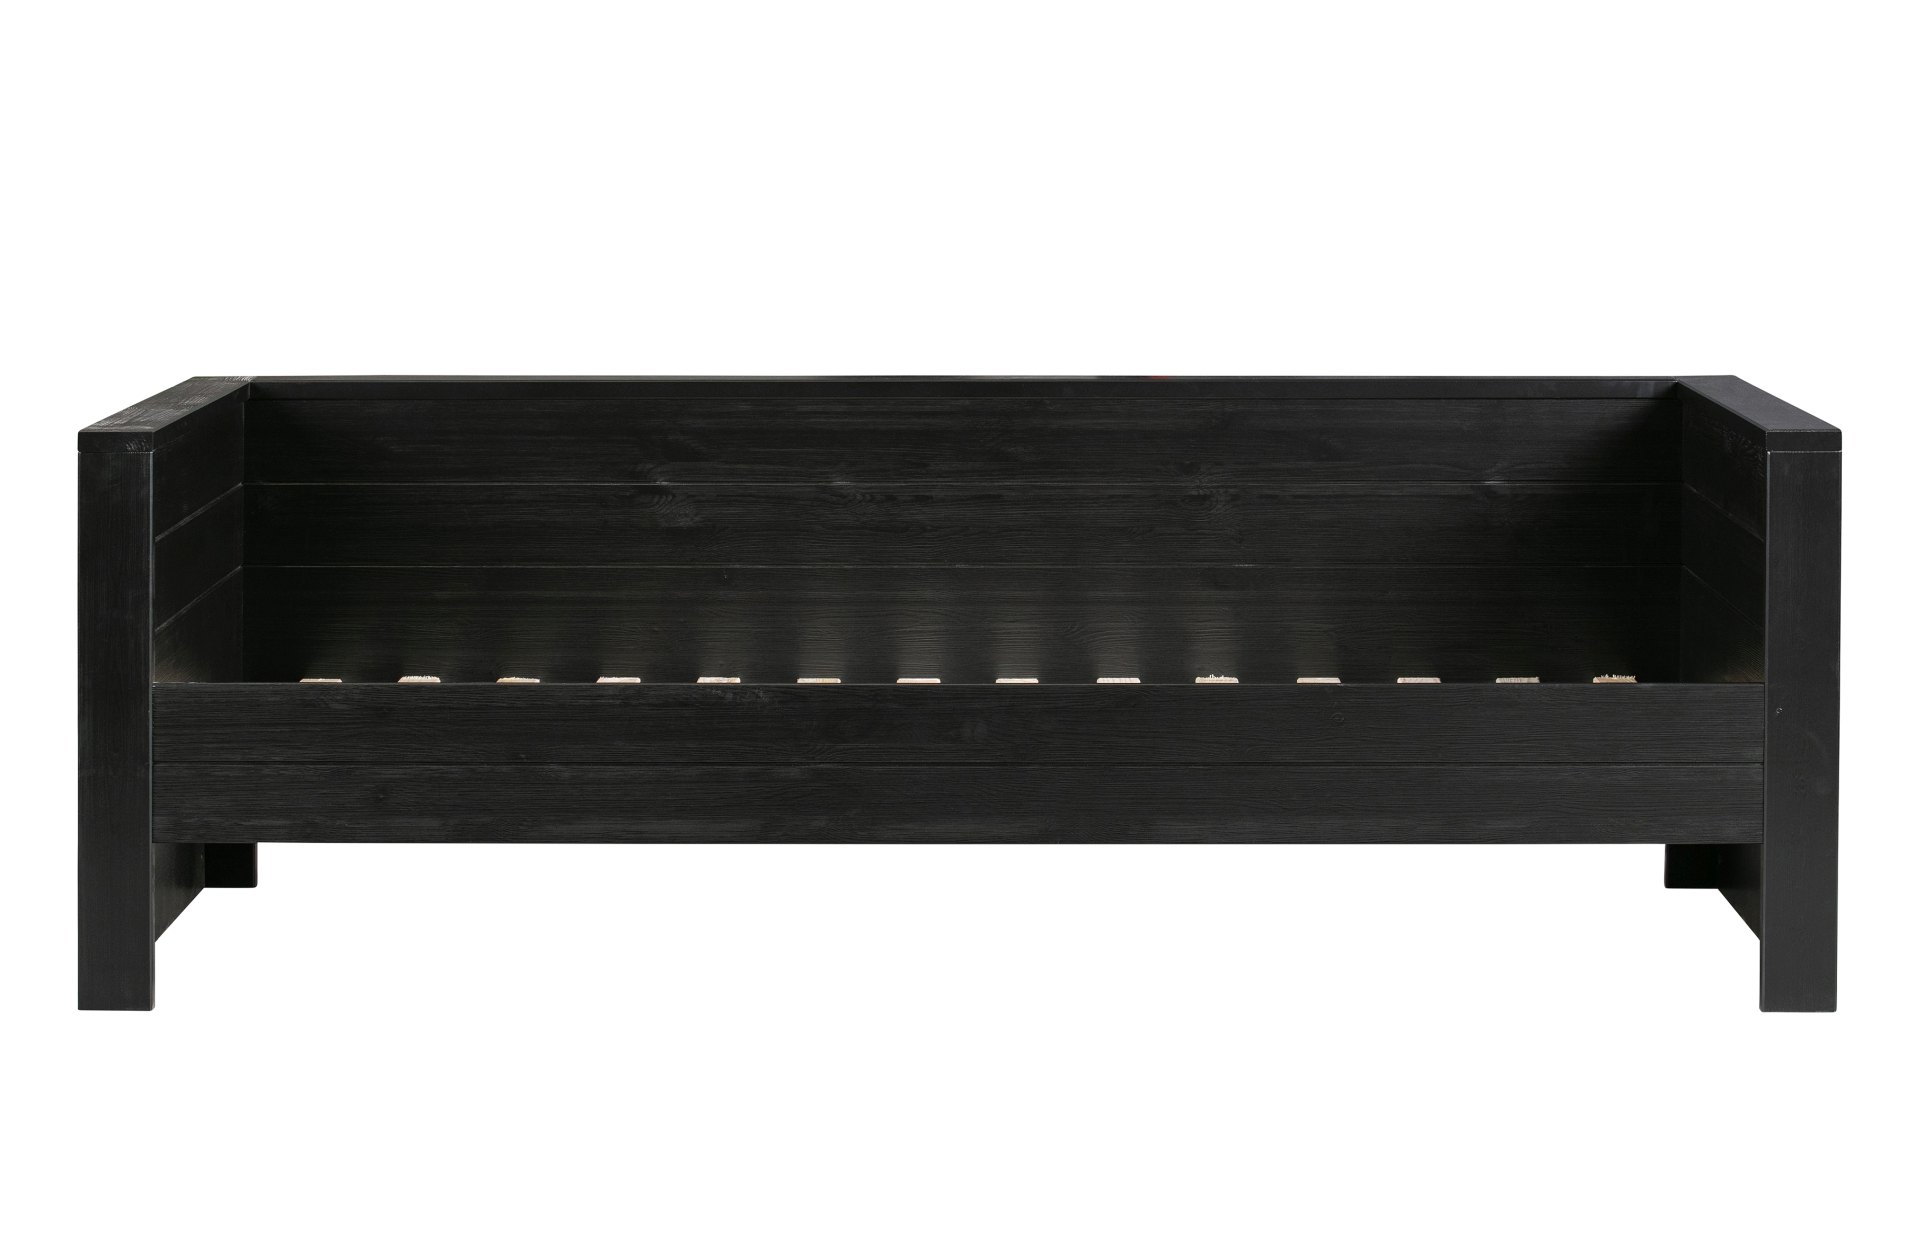 Das Bettgestell Dennis Sofabett wurde aus Kiefernholz gefertigt und besitzt einen schwarzen Farbton. Die Maße des Bettes sind 90x200 cm.